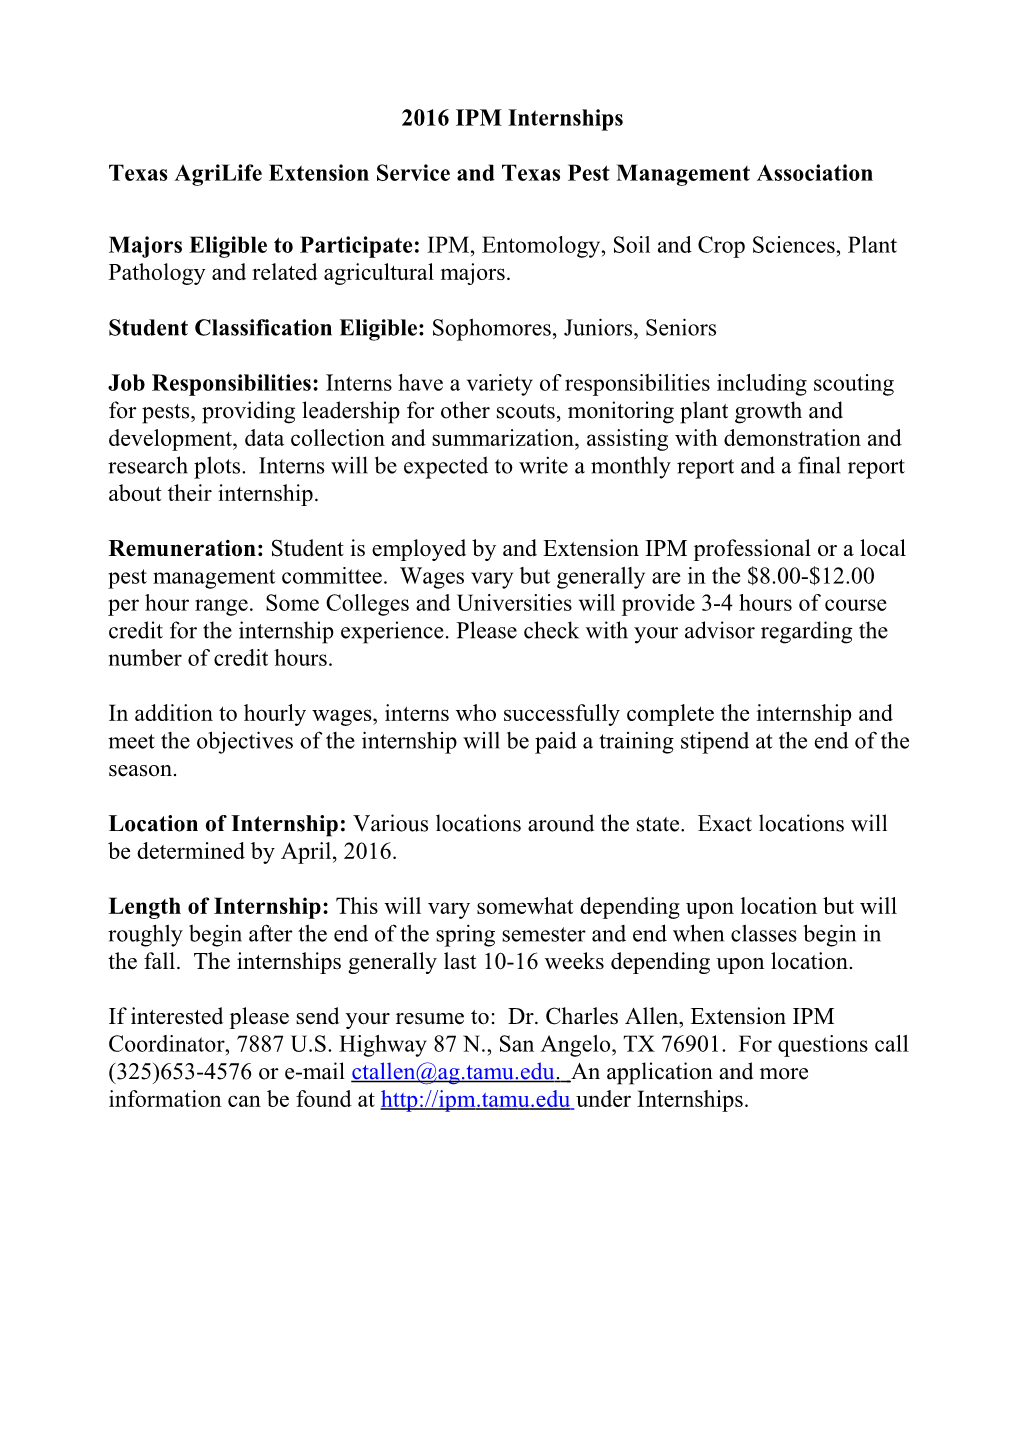 2012 IPM Internship Application Cta Rev 2